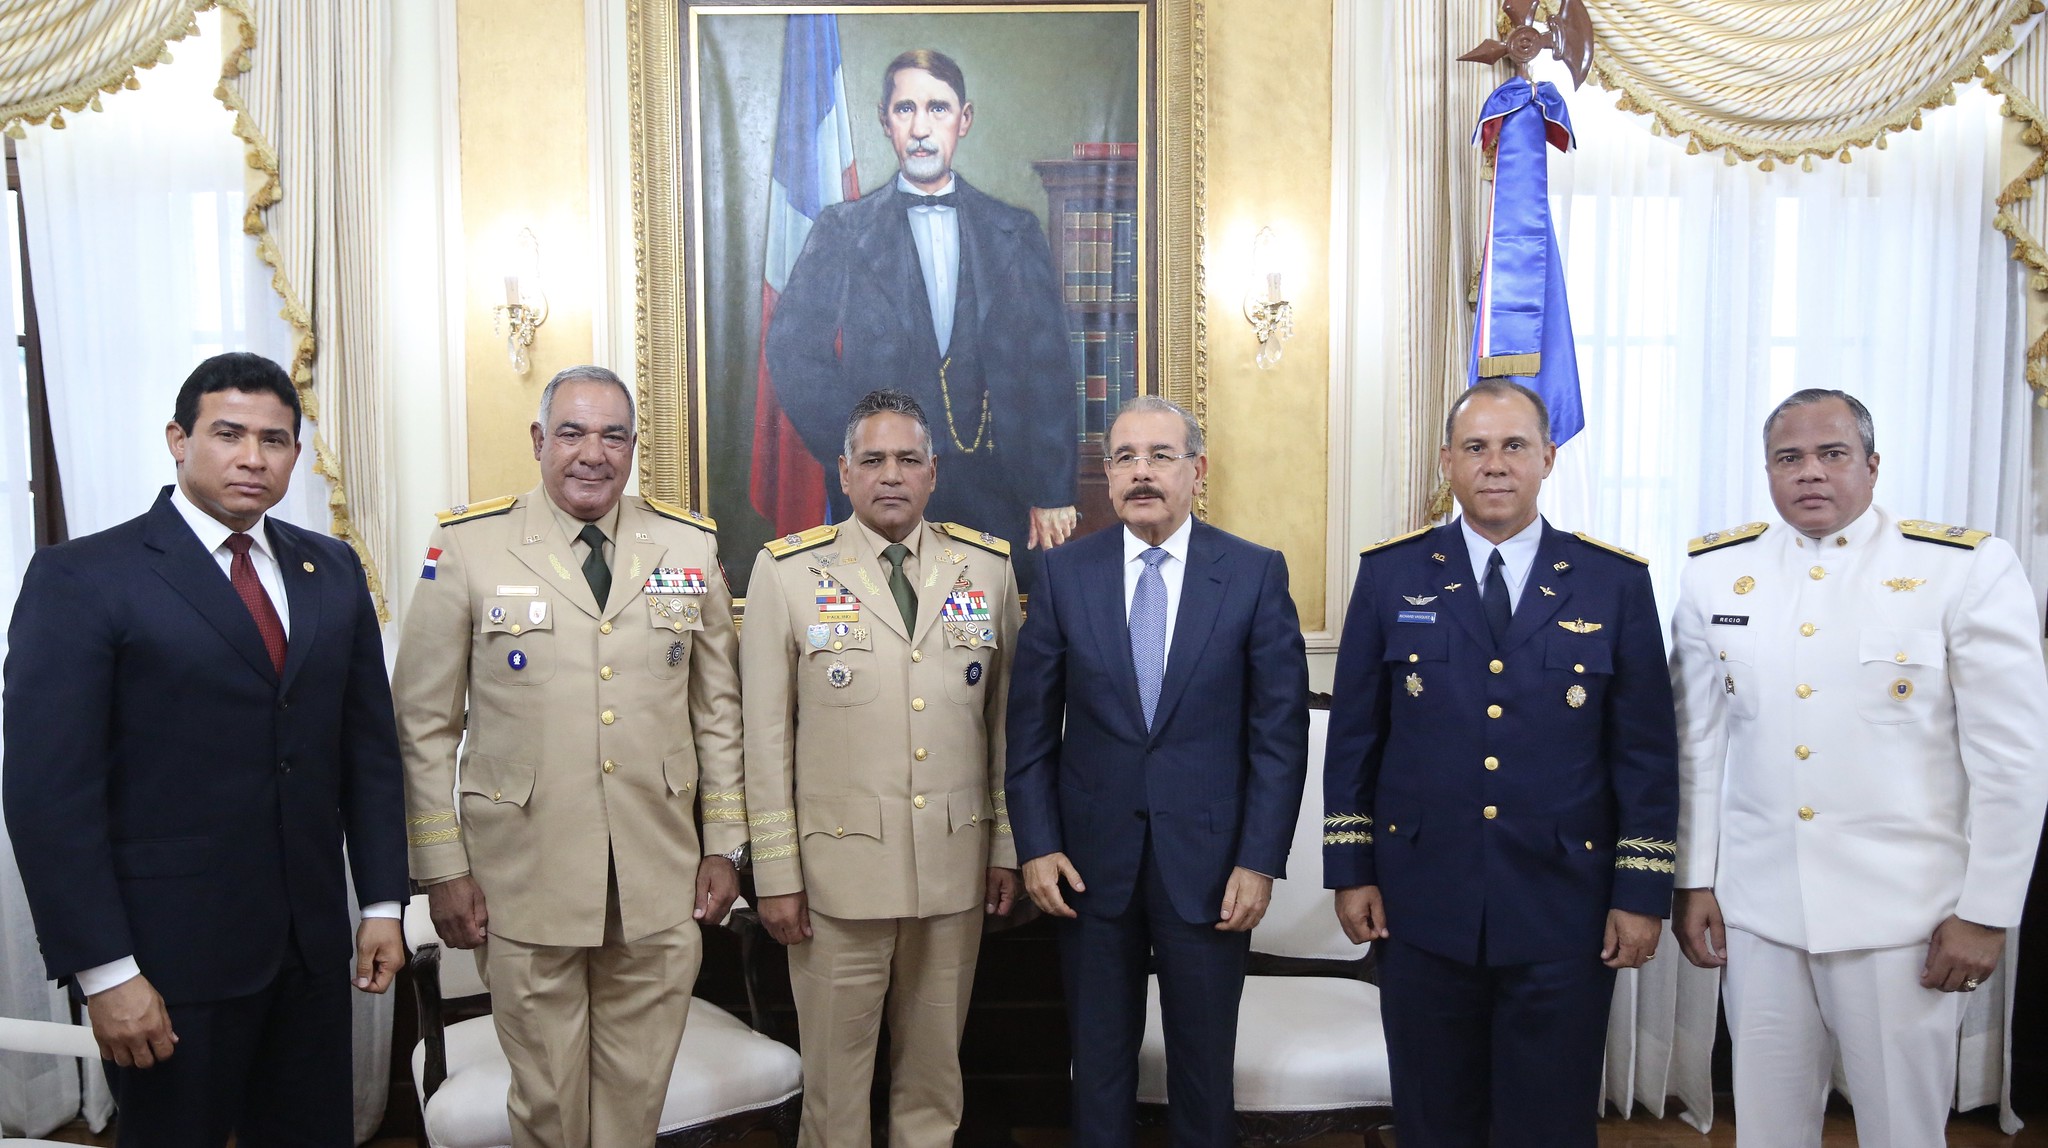 REPÚBLICA DOMINICANA: Altos mandos se reúnen con presidente Danilo Medina. Resaltan planes de viviendas dignas y seguro de salud de militares y familiares